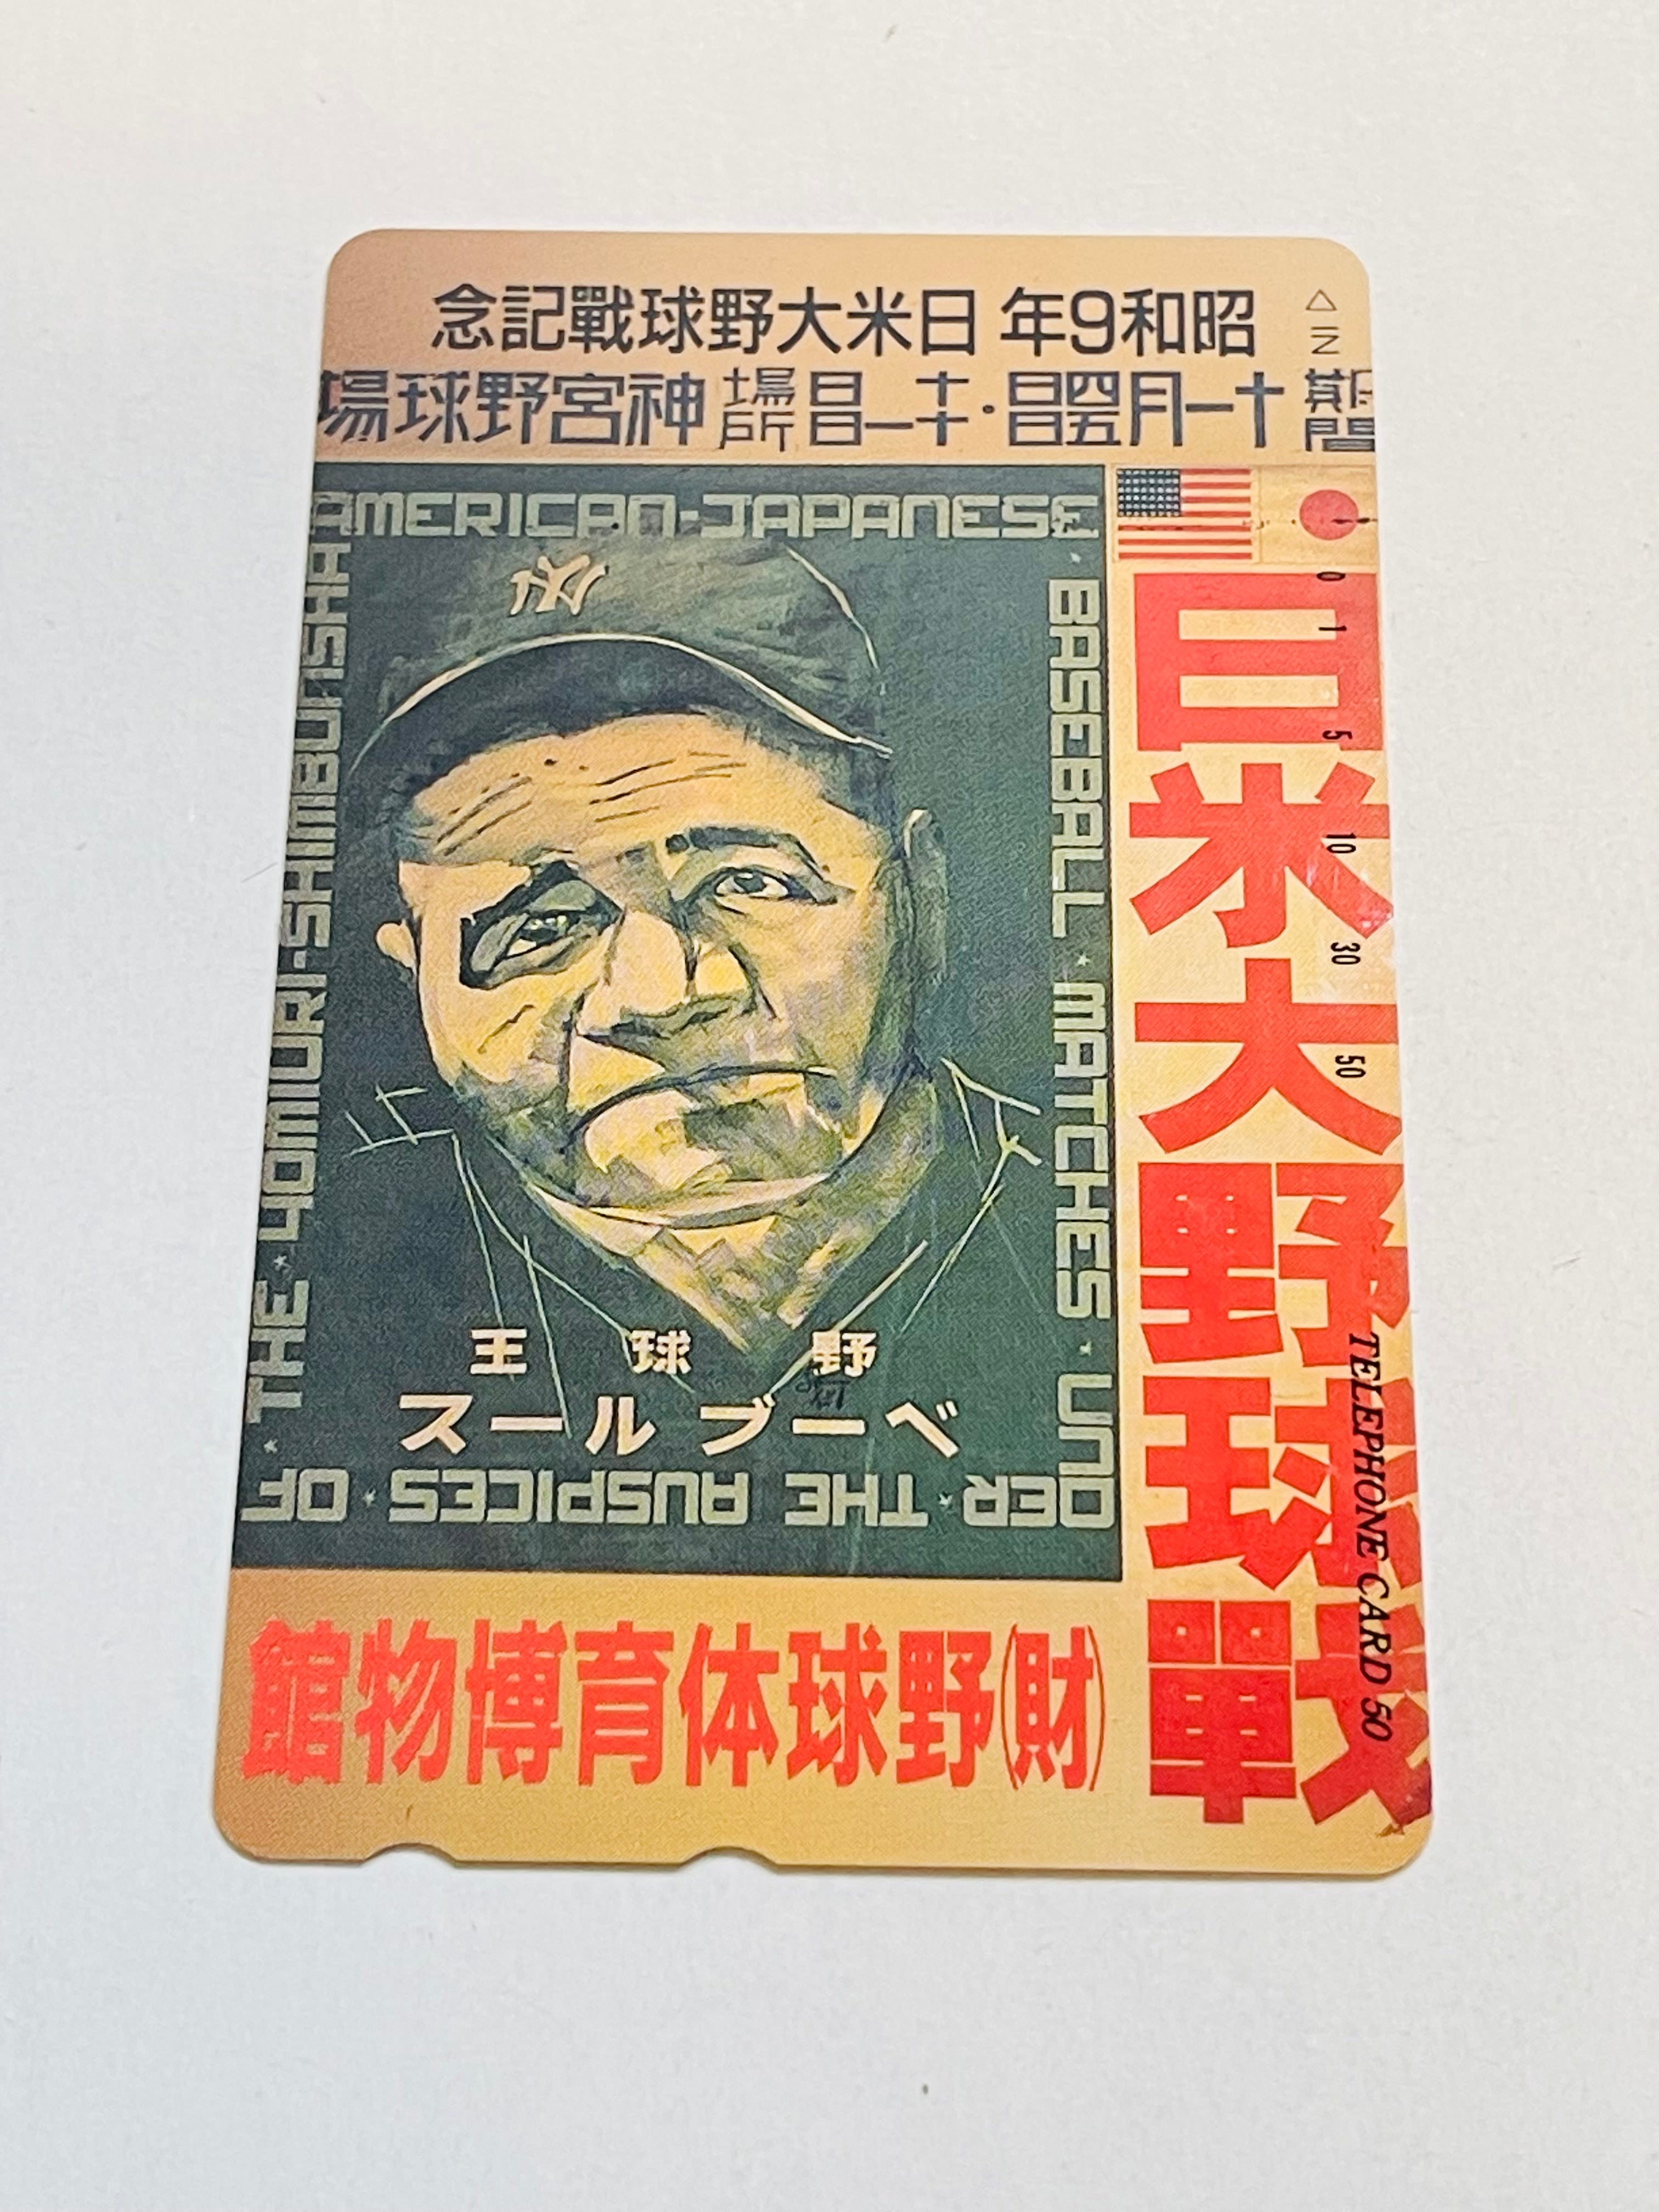 Babe Ruth baseball Japanese phone card 1990